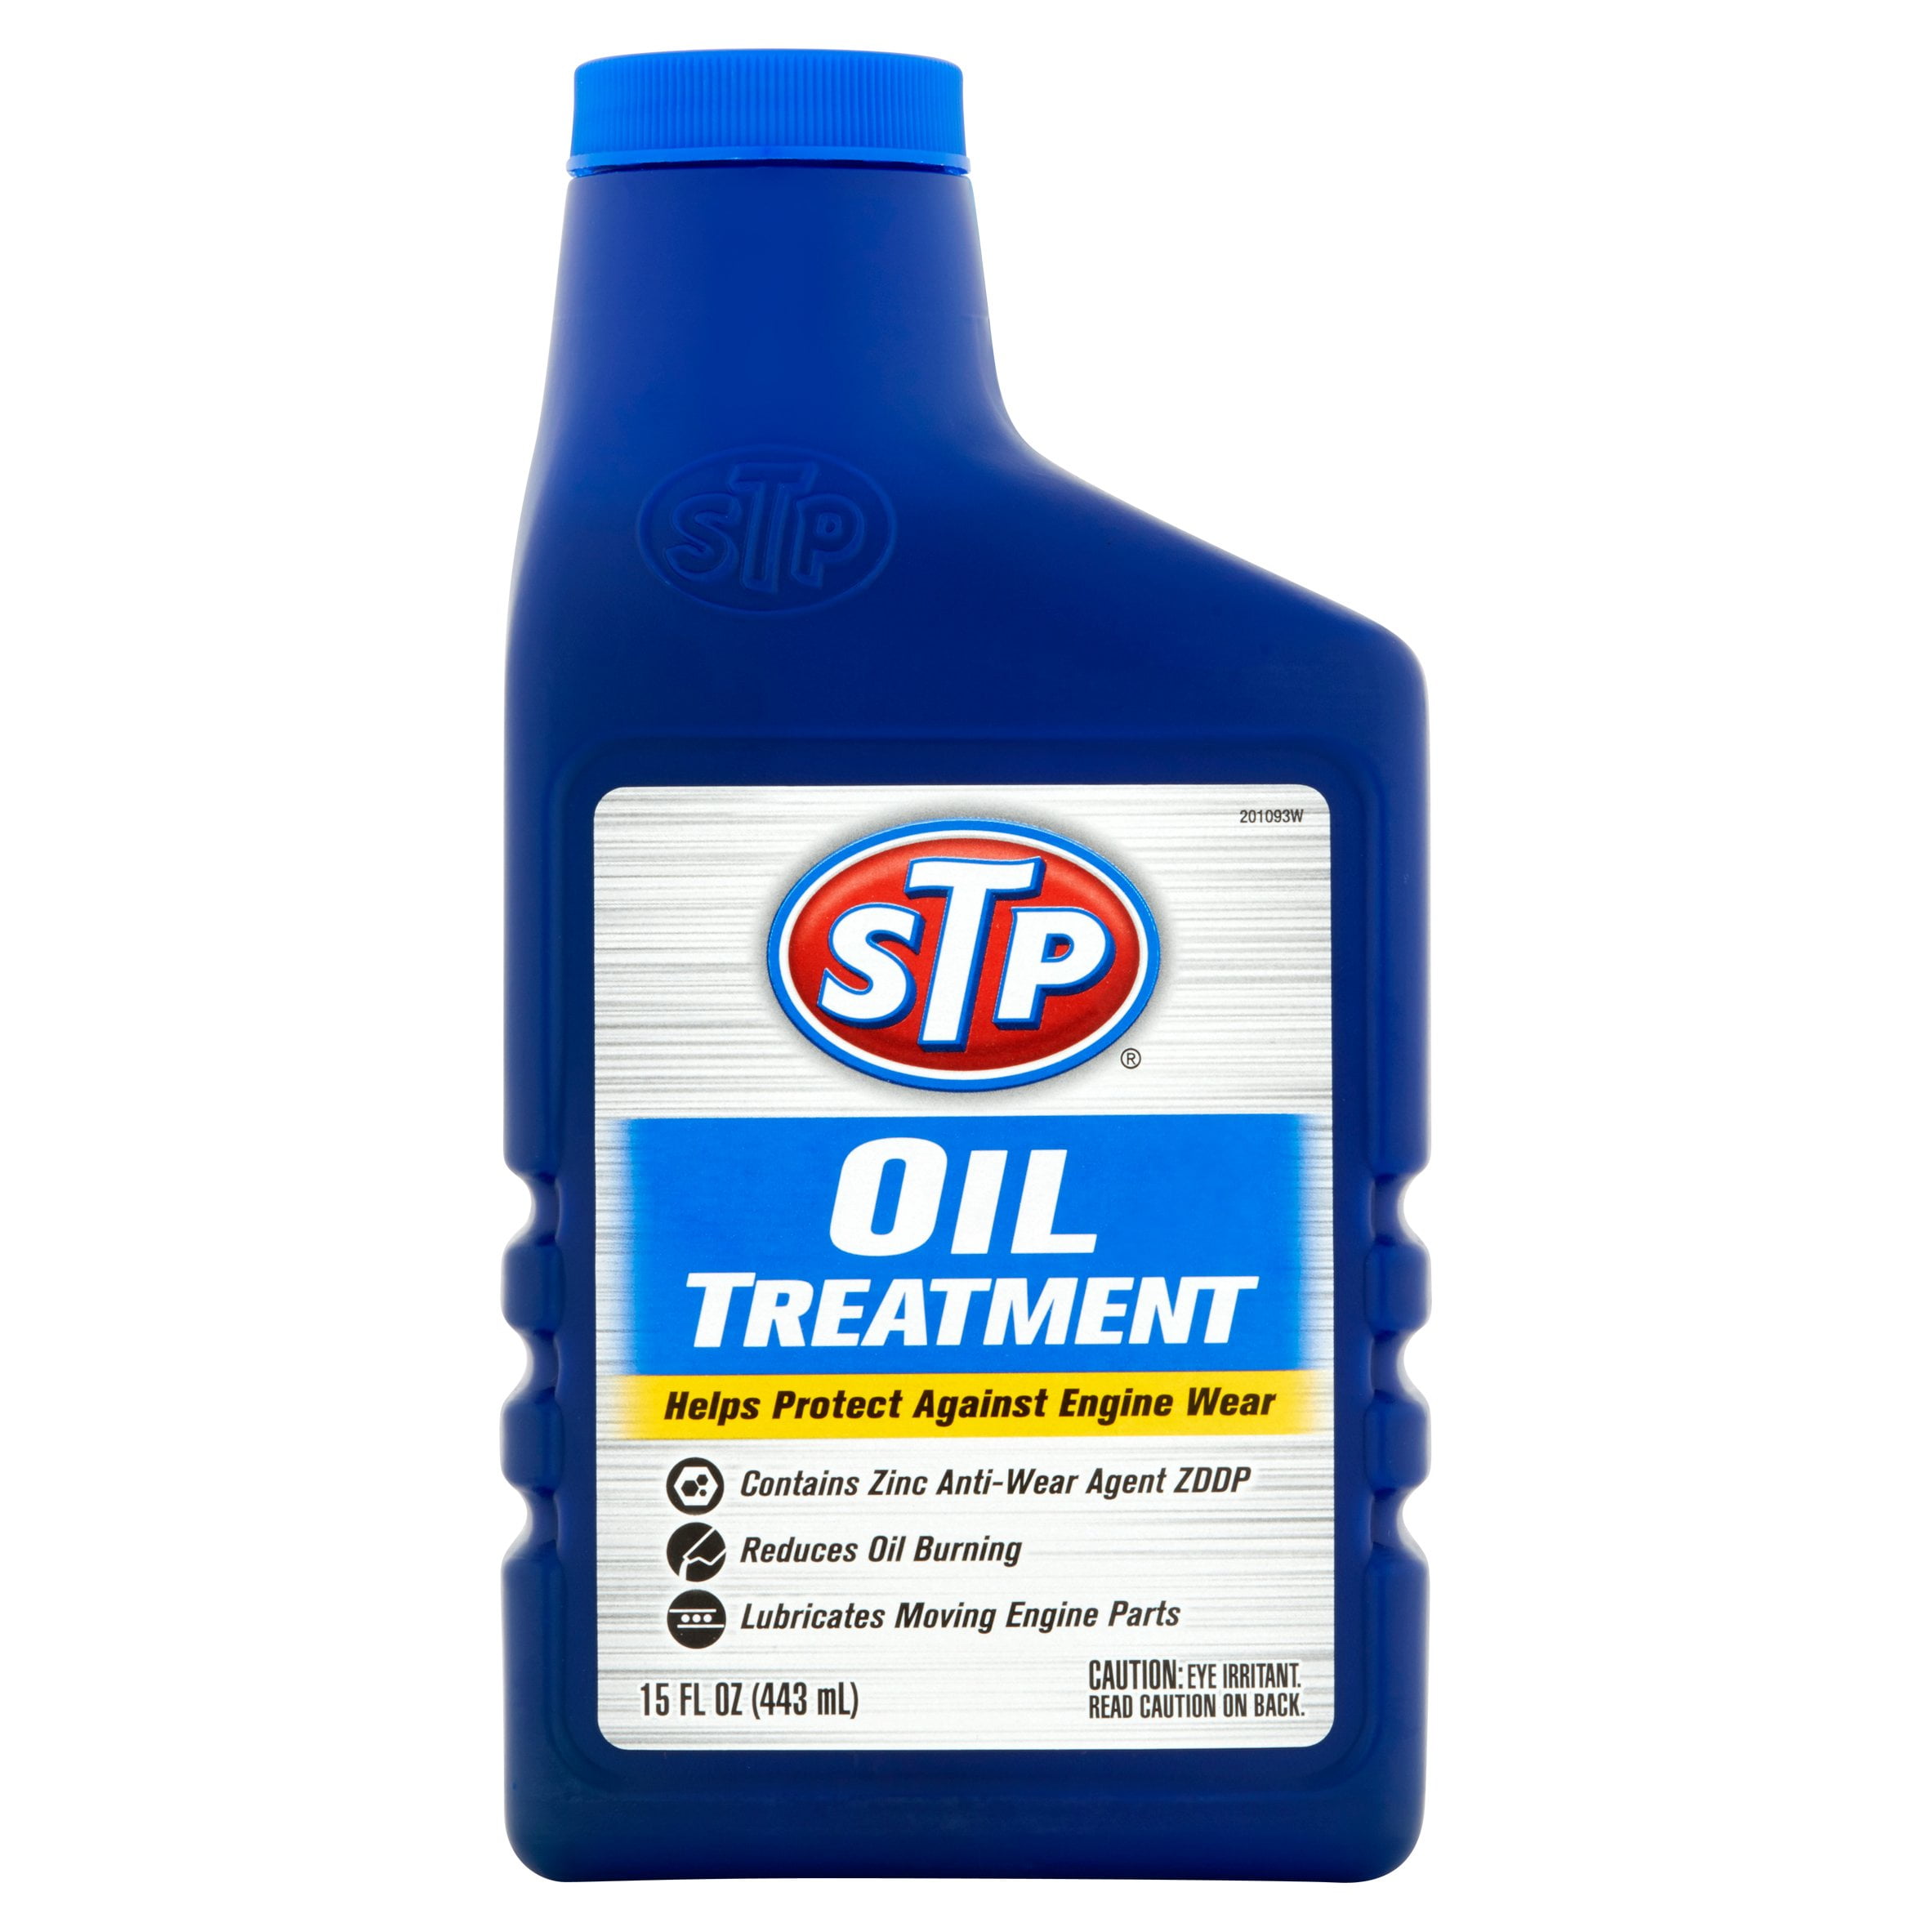 STP Oil Treatment, 15 fluid ounces, 8262, Oil Additives - Walmart.com.